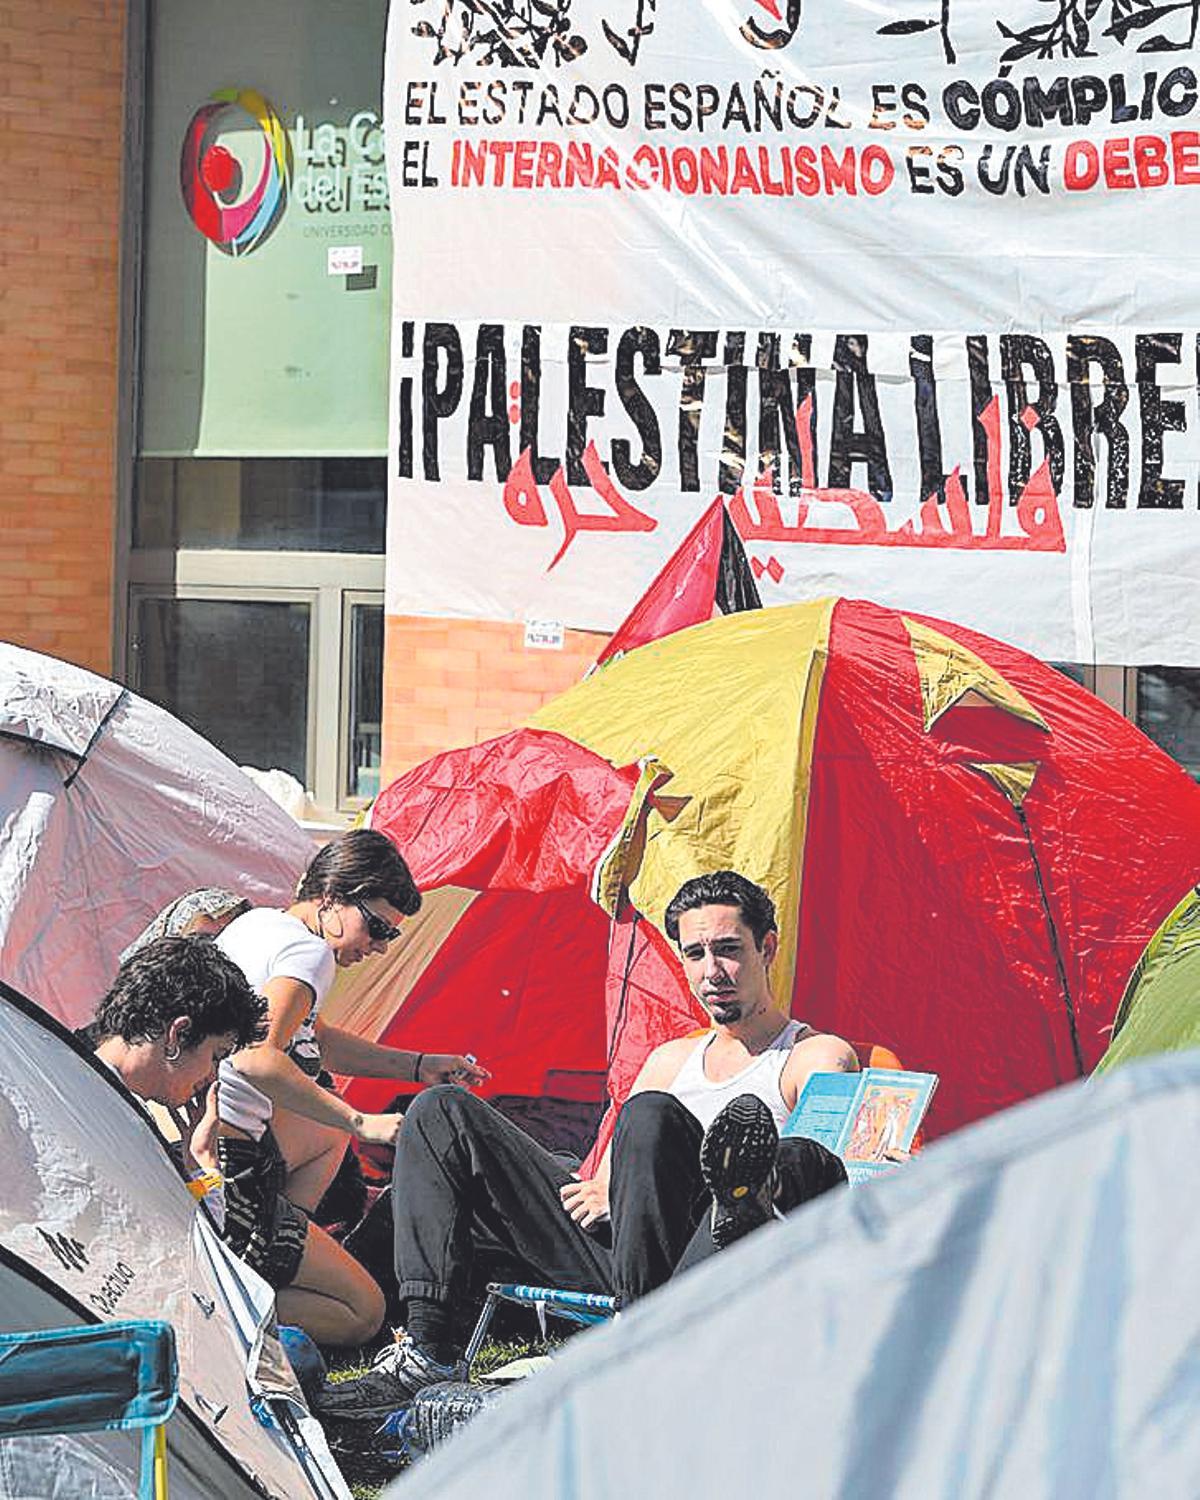 Estudiantes acampados en la Universidad Complutense de Madrid.